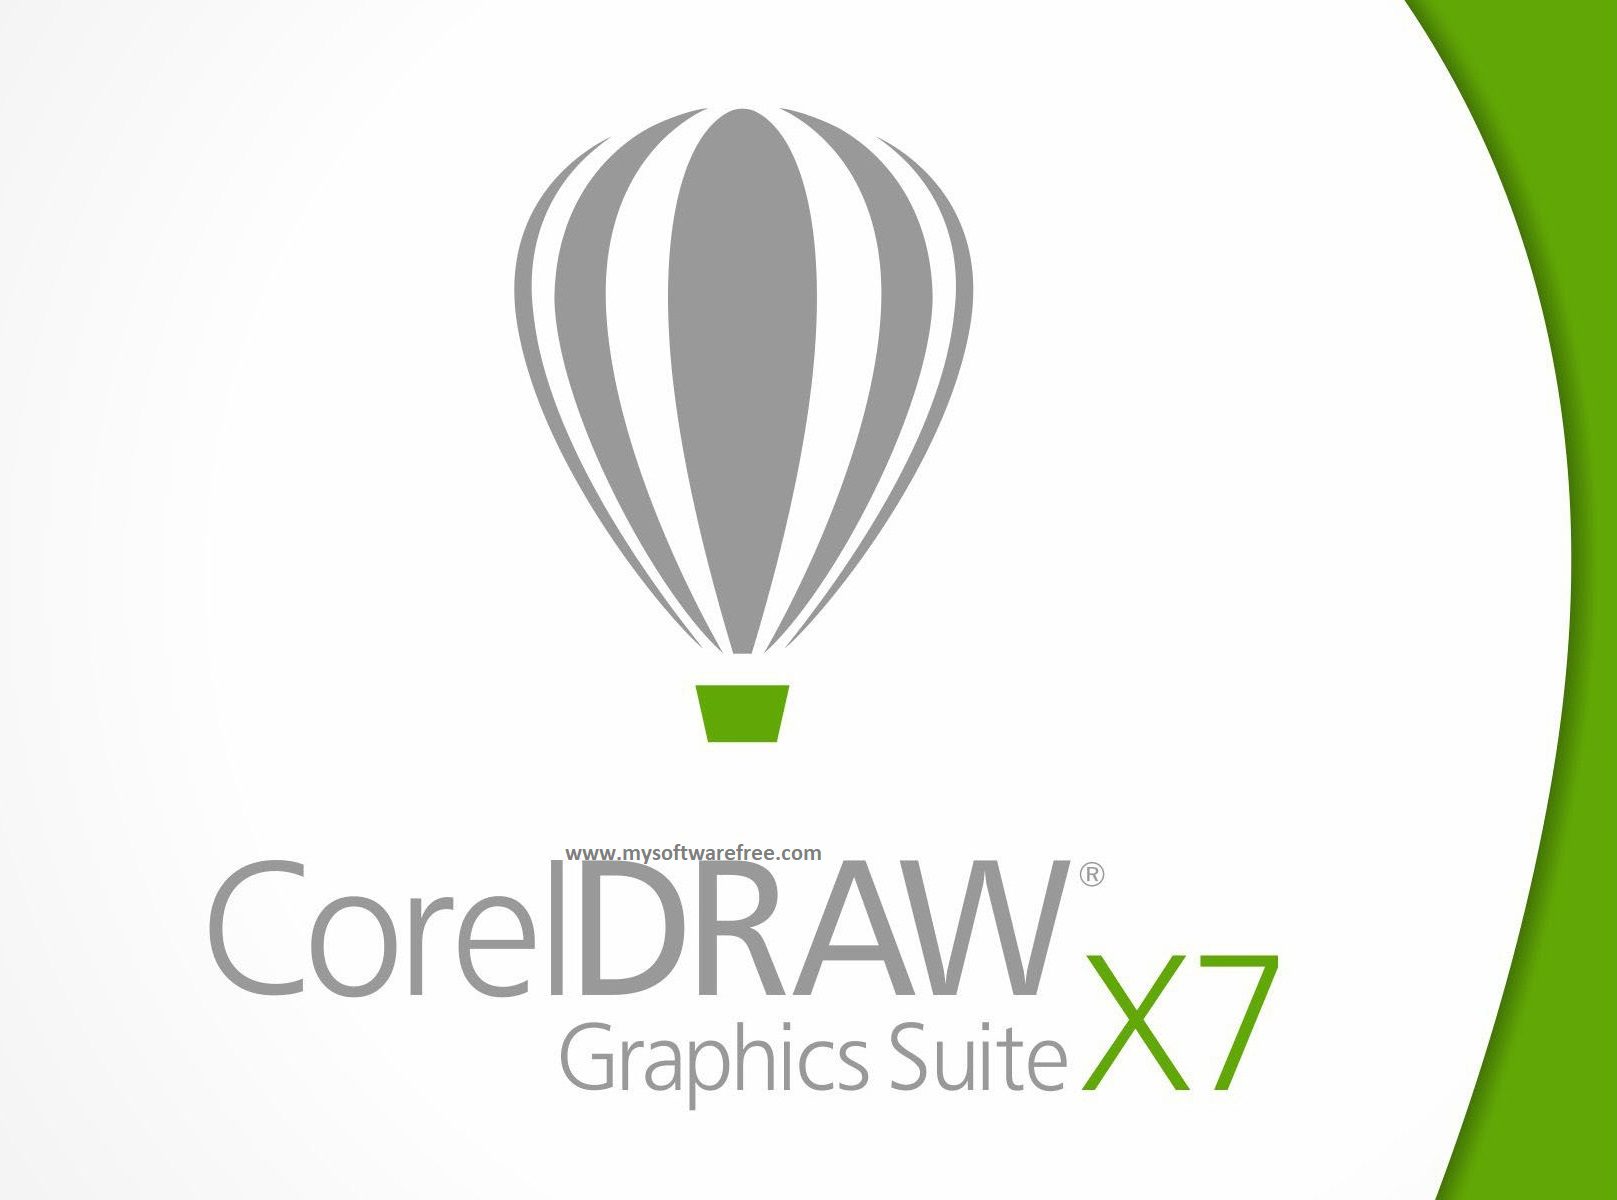 CorelDraw Graphics Suite X6 Free Download - Getintopc